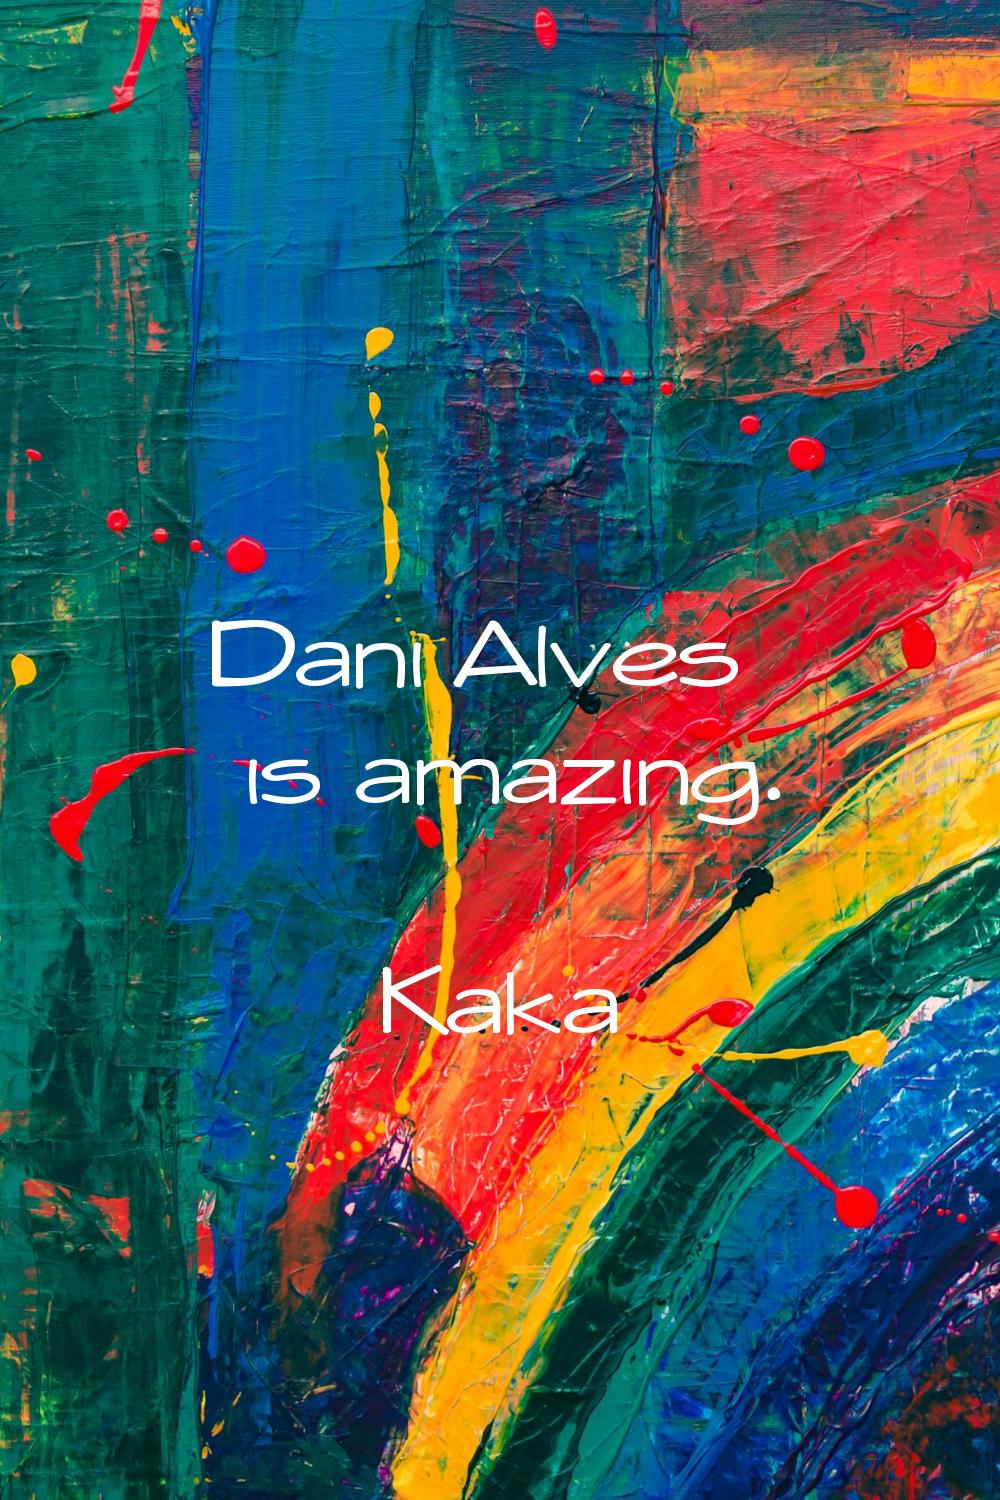 Dani Alves is amazing.